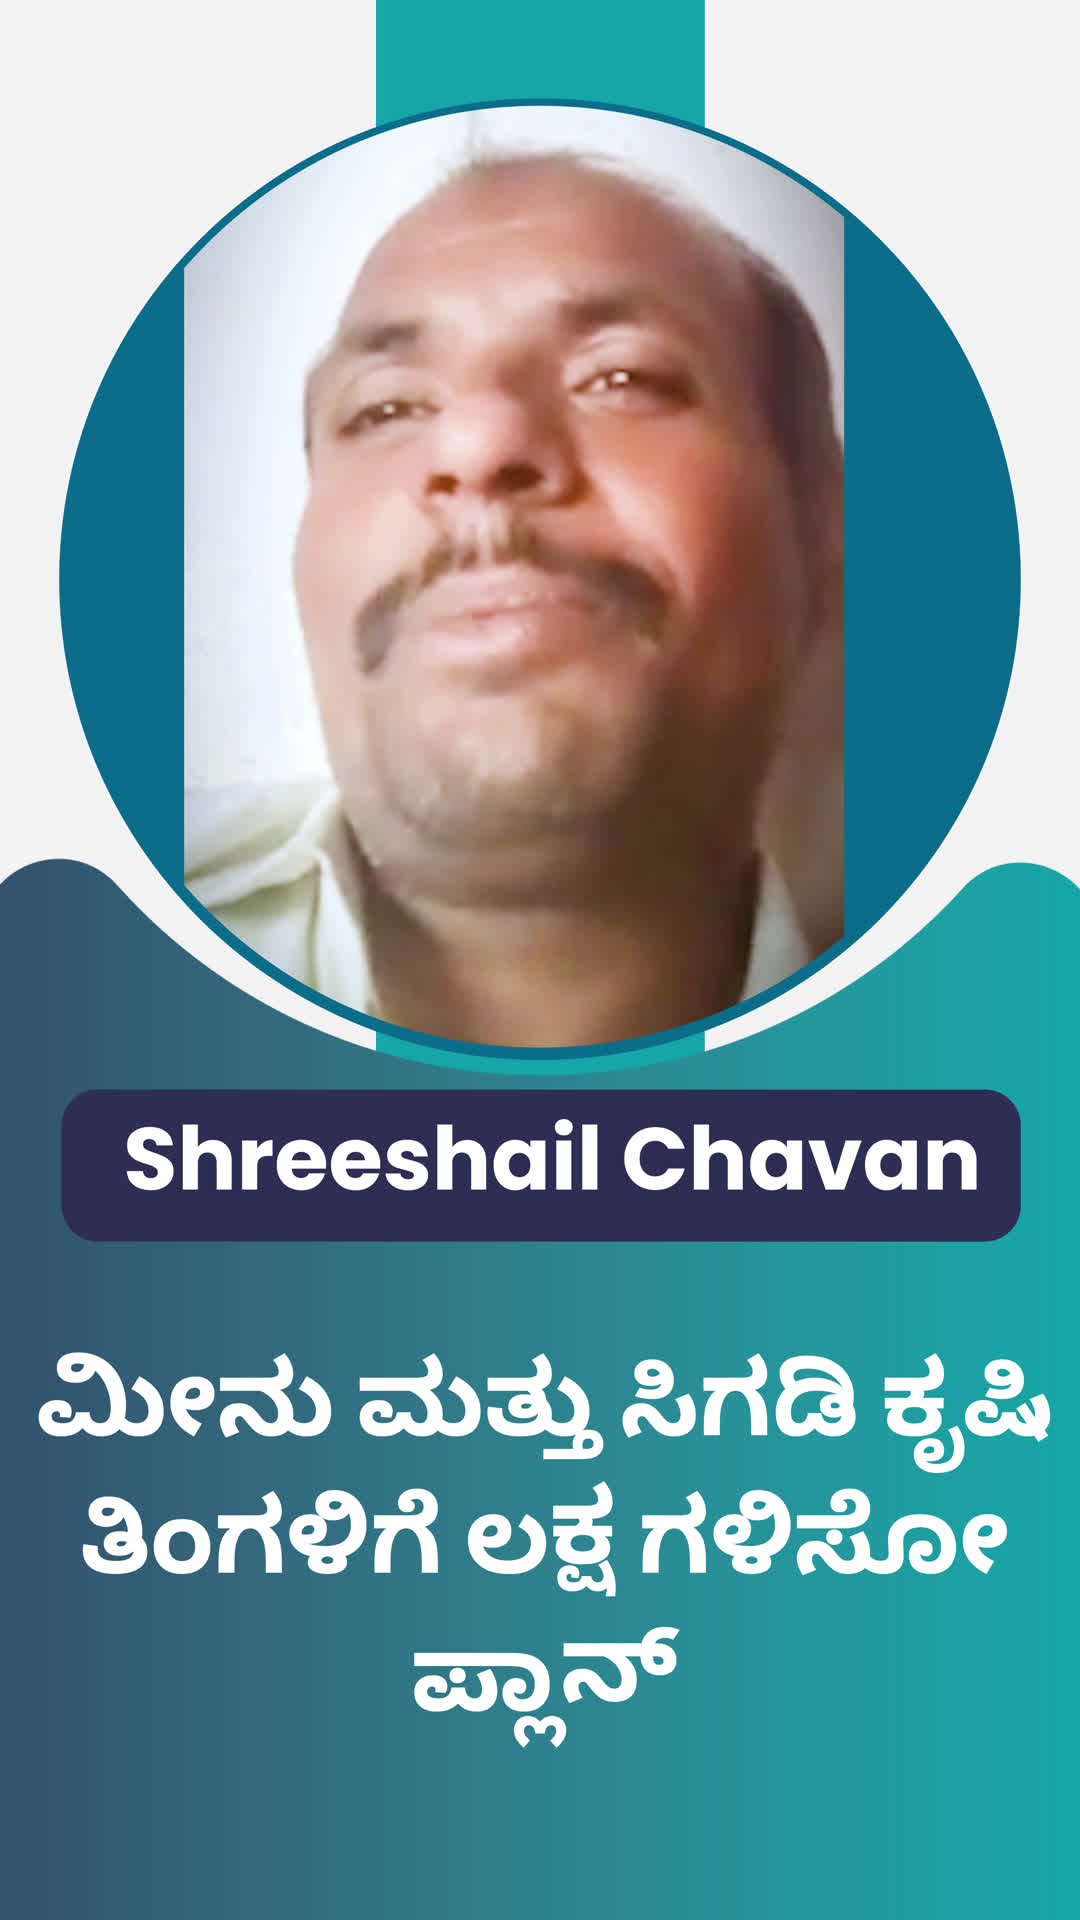 Shreeshail Chavan's Honest Review of ffreedom app - Vijayapura ,Karnataka